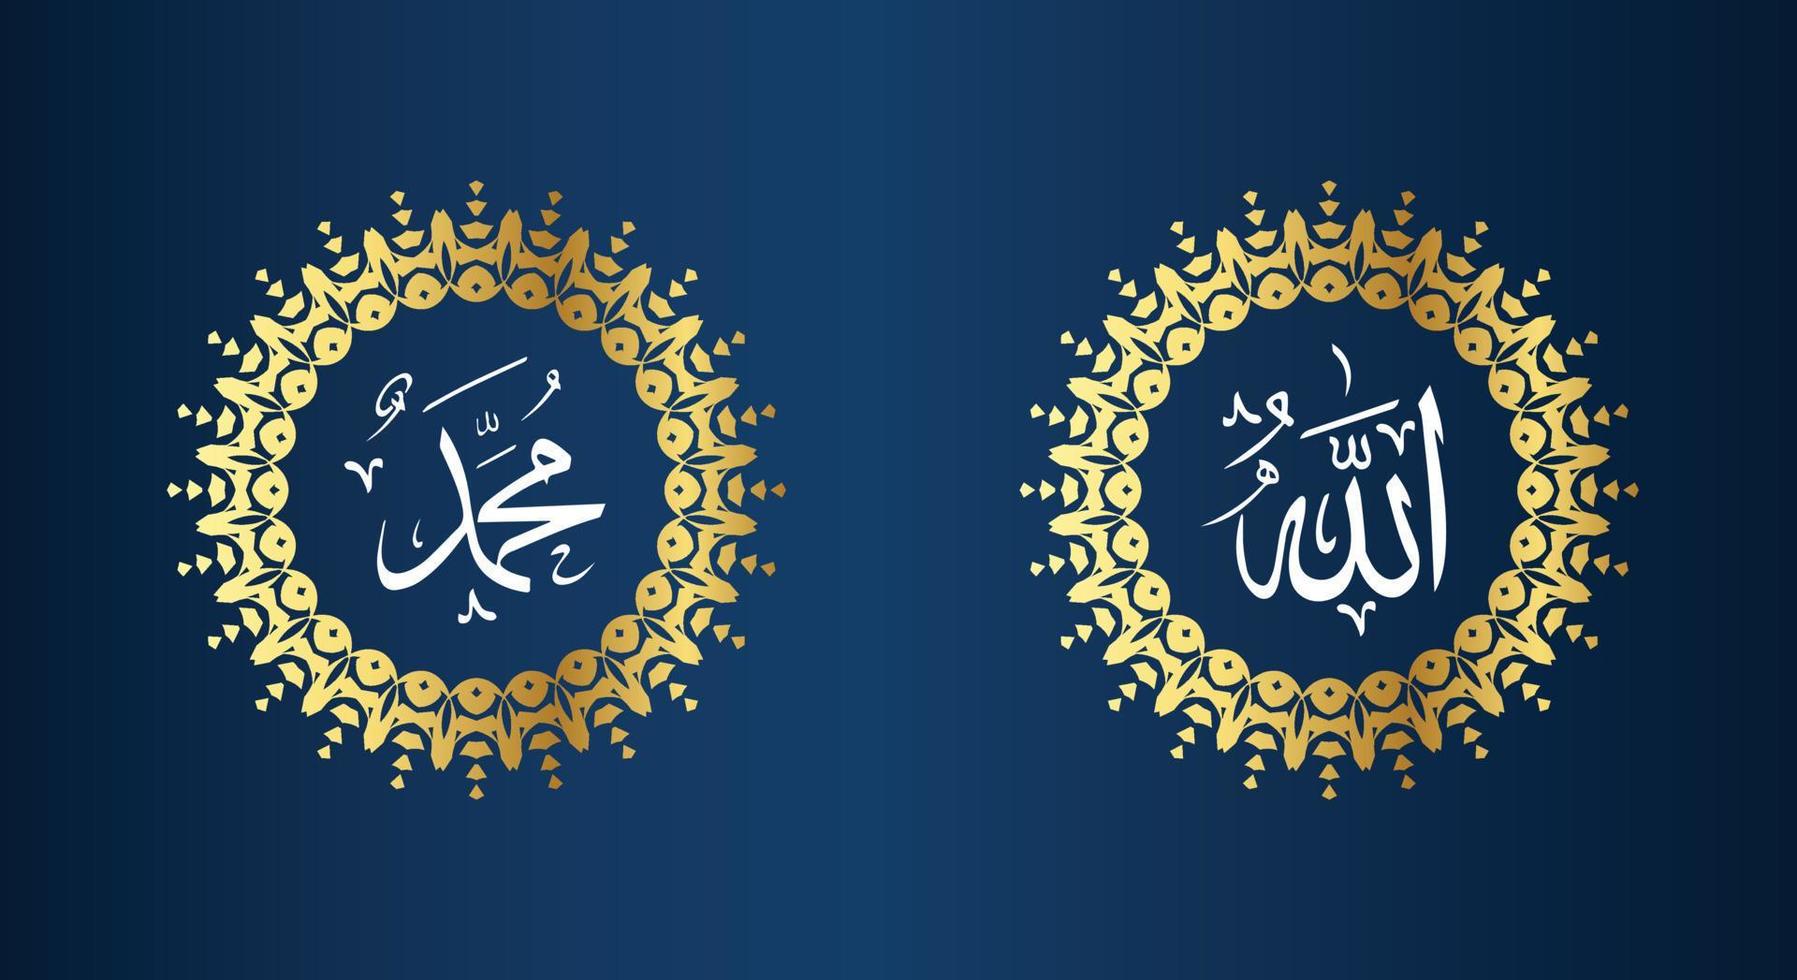 allah muhammad name von allah muhammad, allah muhammad arabische islamische kalligraphiekunst, mit traditionellem rahmen und goldener farbe vektor